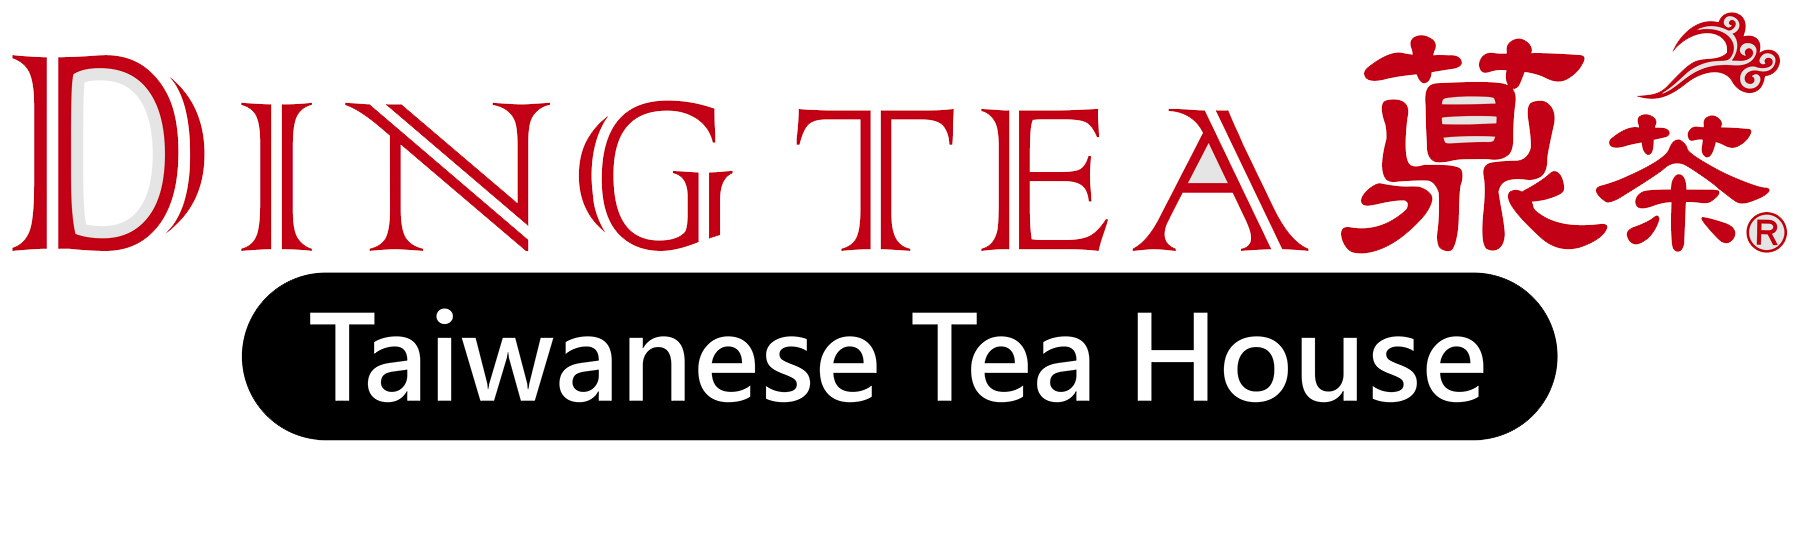 Ding Tea Psu